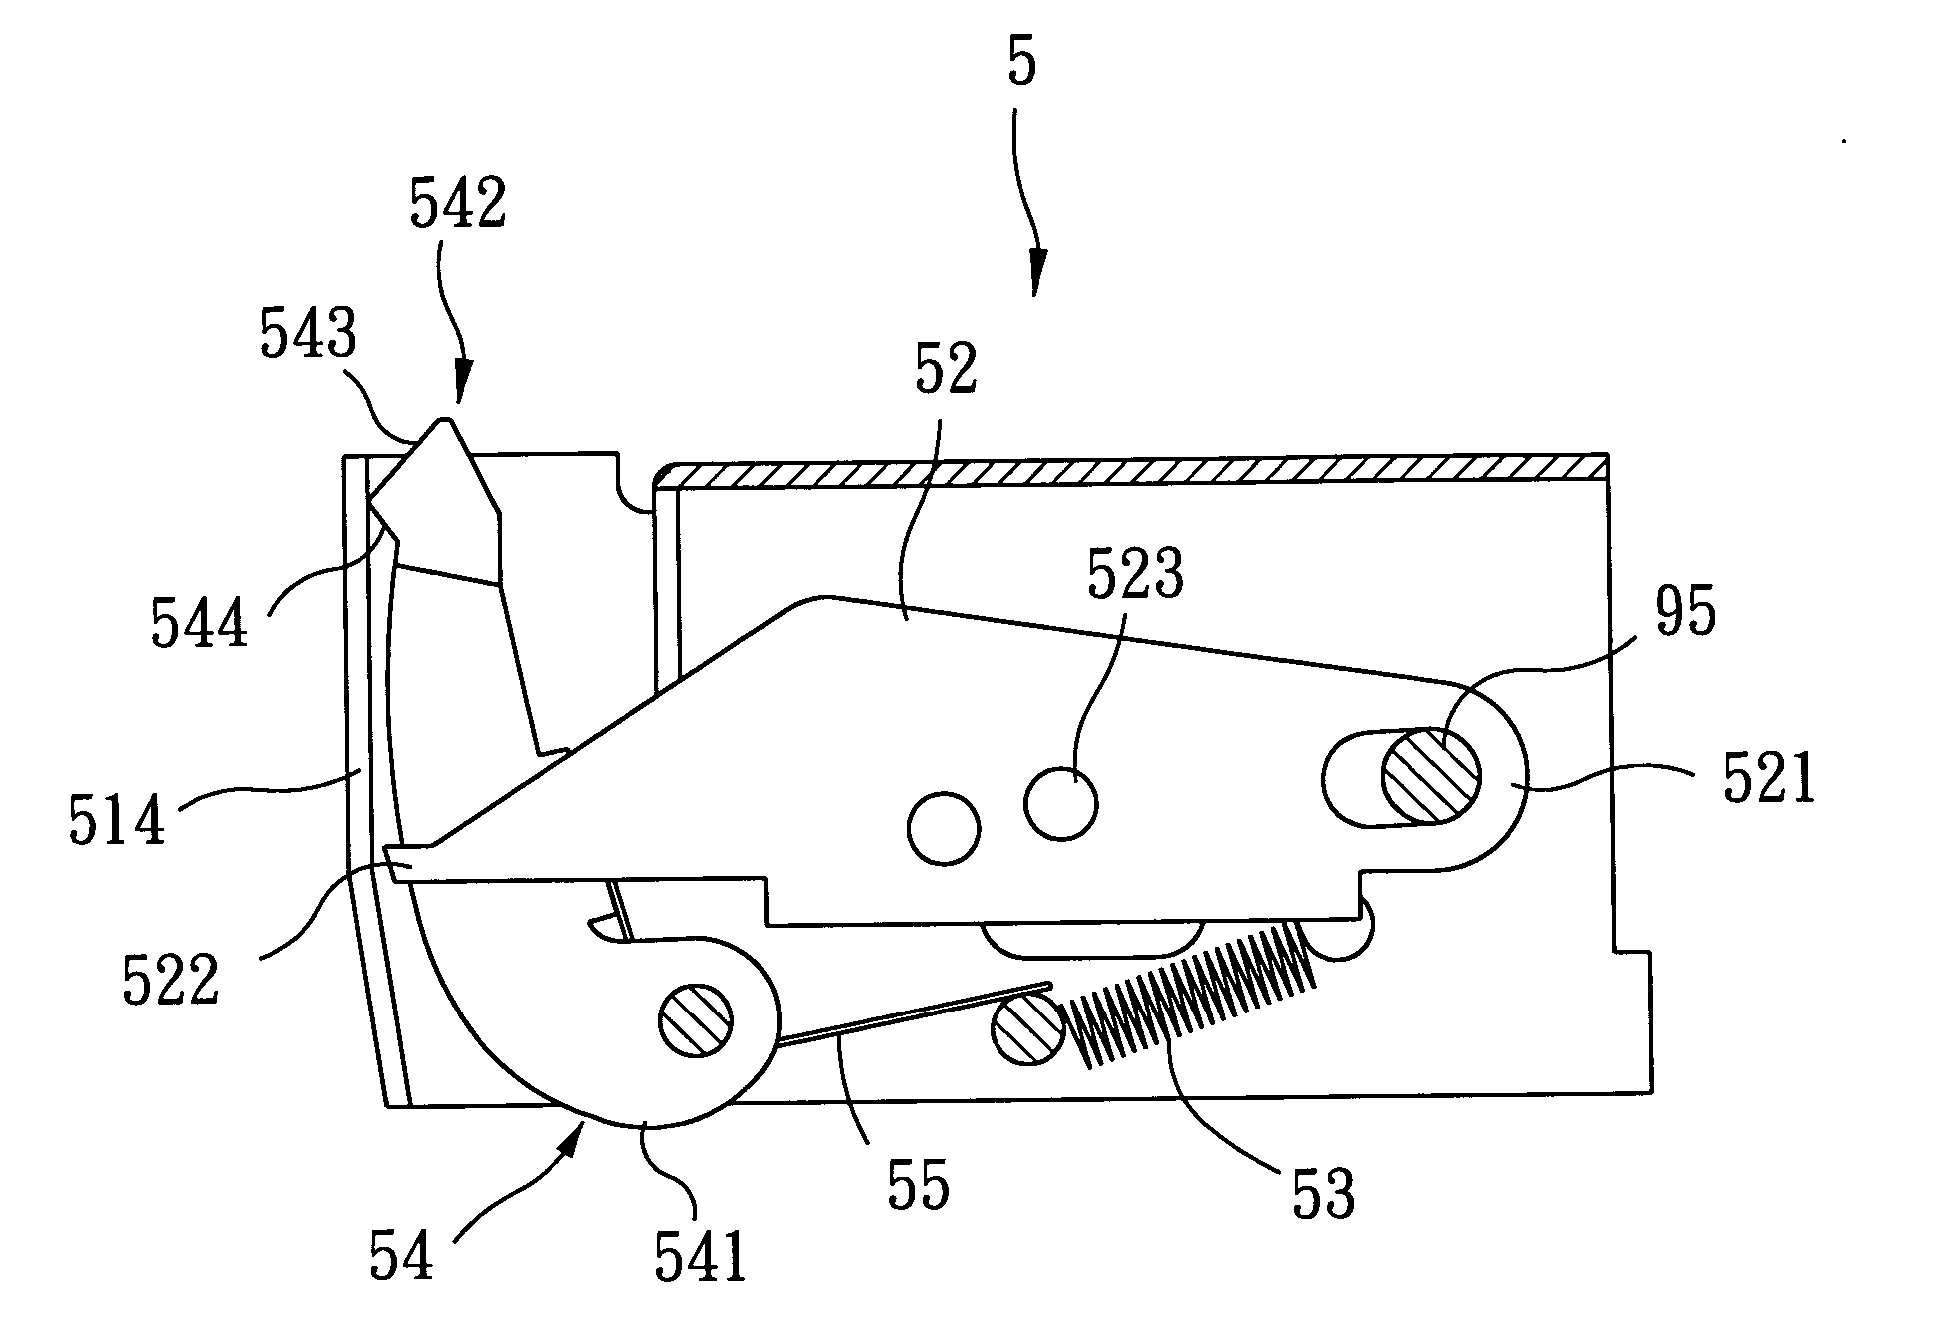 Screw-belt advancing mechanism for a screw driving gun